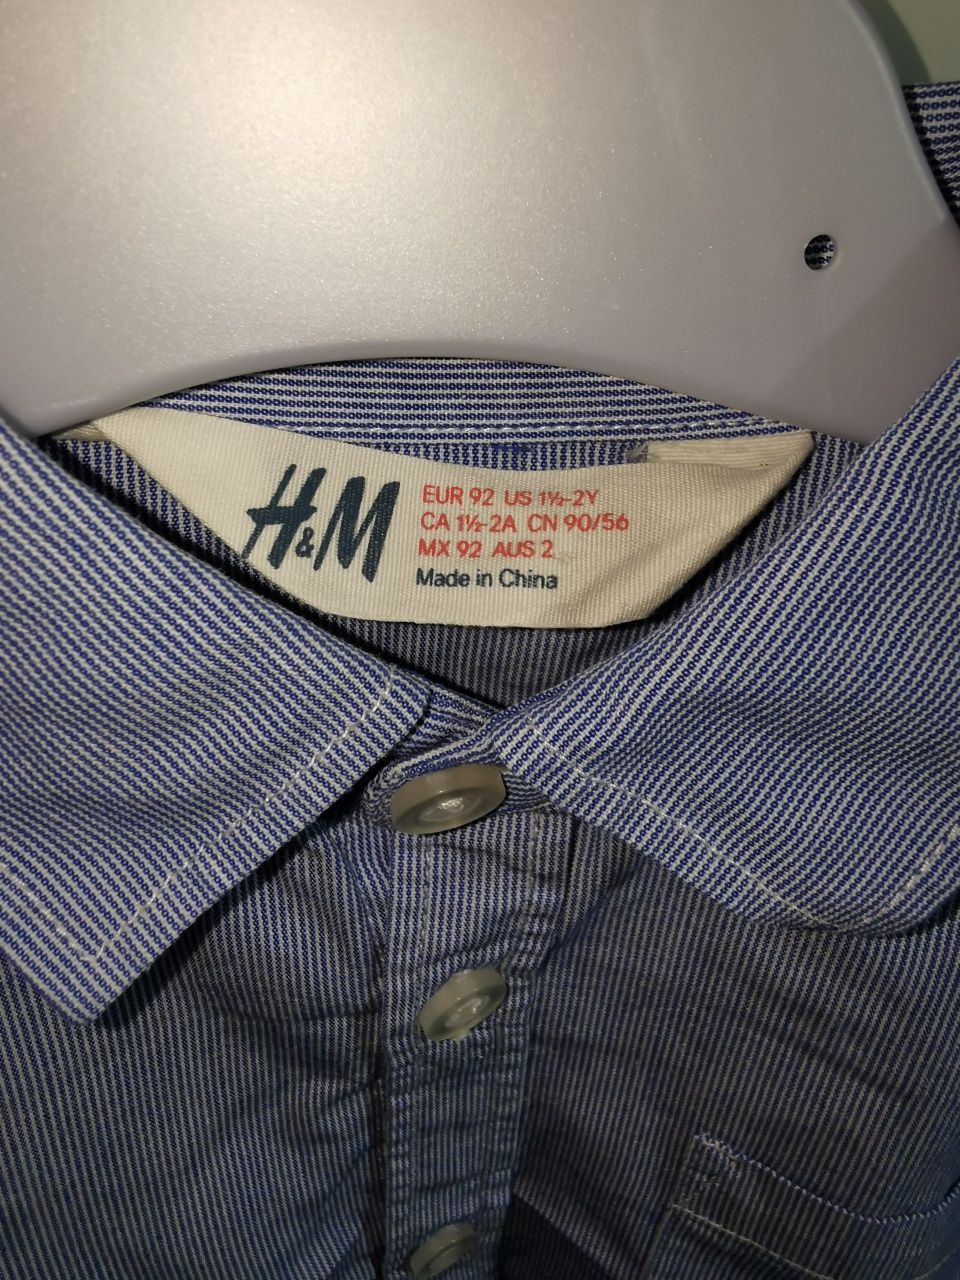 Koszula chłopięca H&M rozm. 92